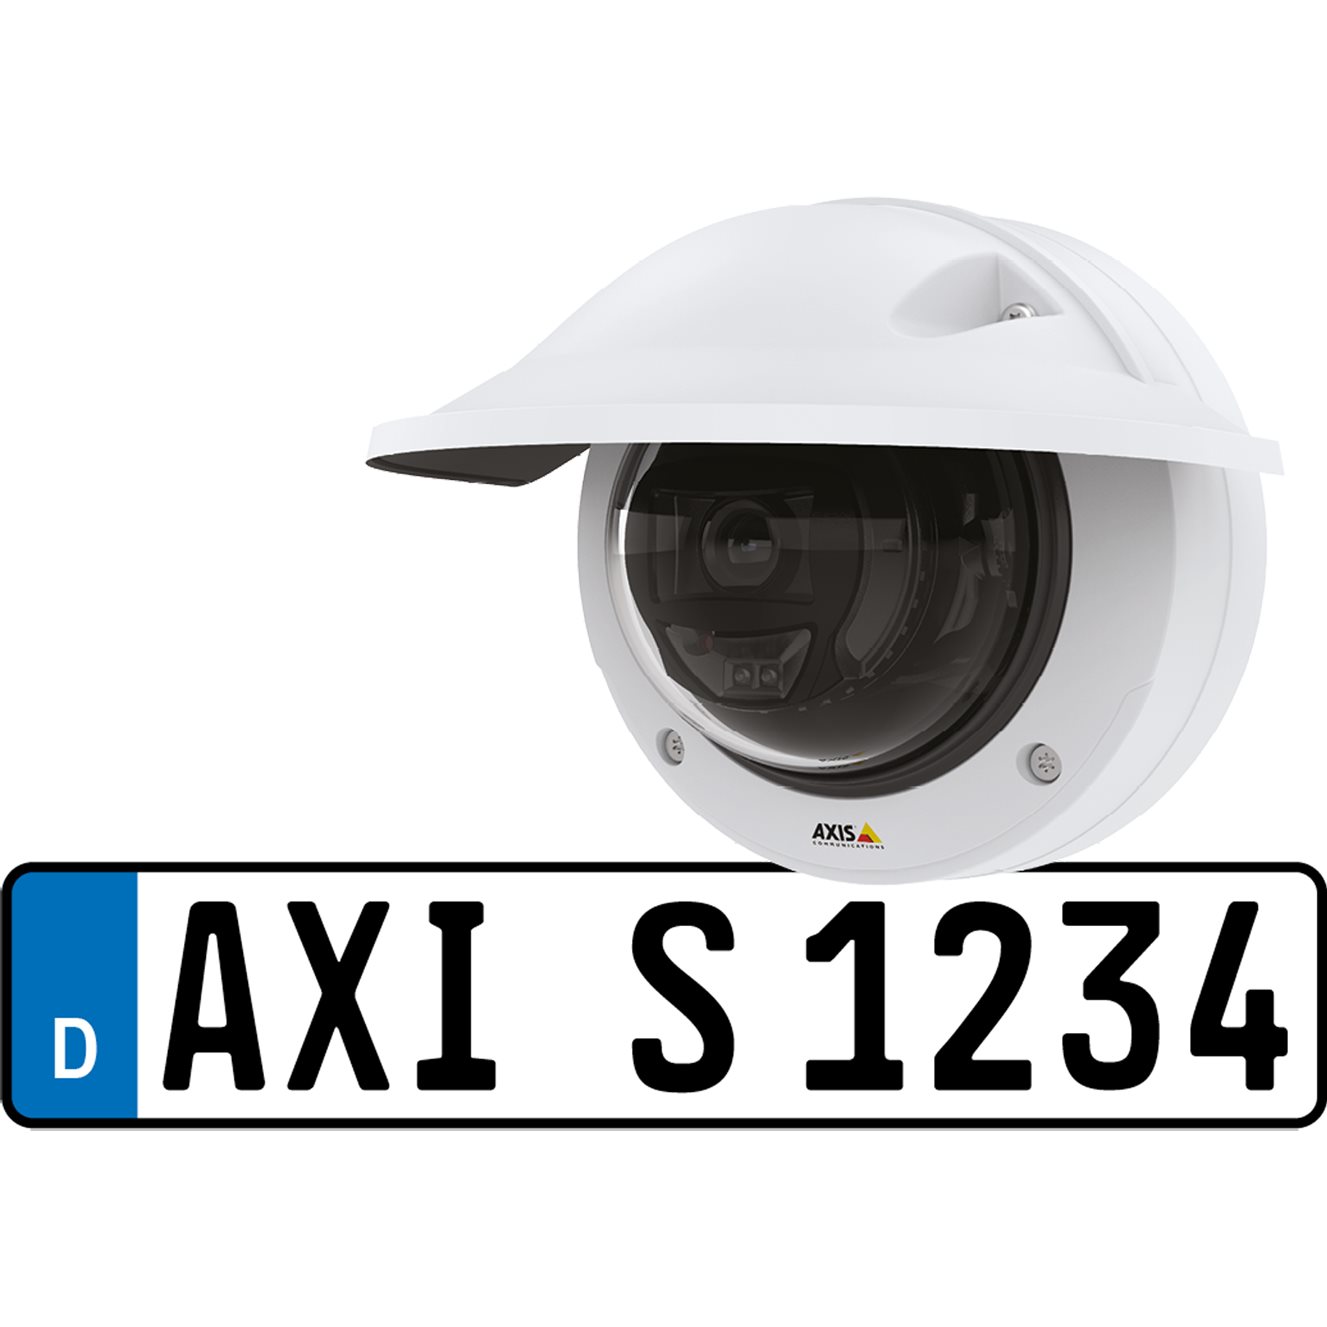  Caméras IP Caméra Axis P3245-LVE-3 L. P. Verifier Kit 02234-001